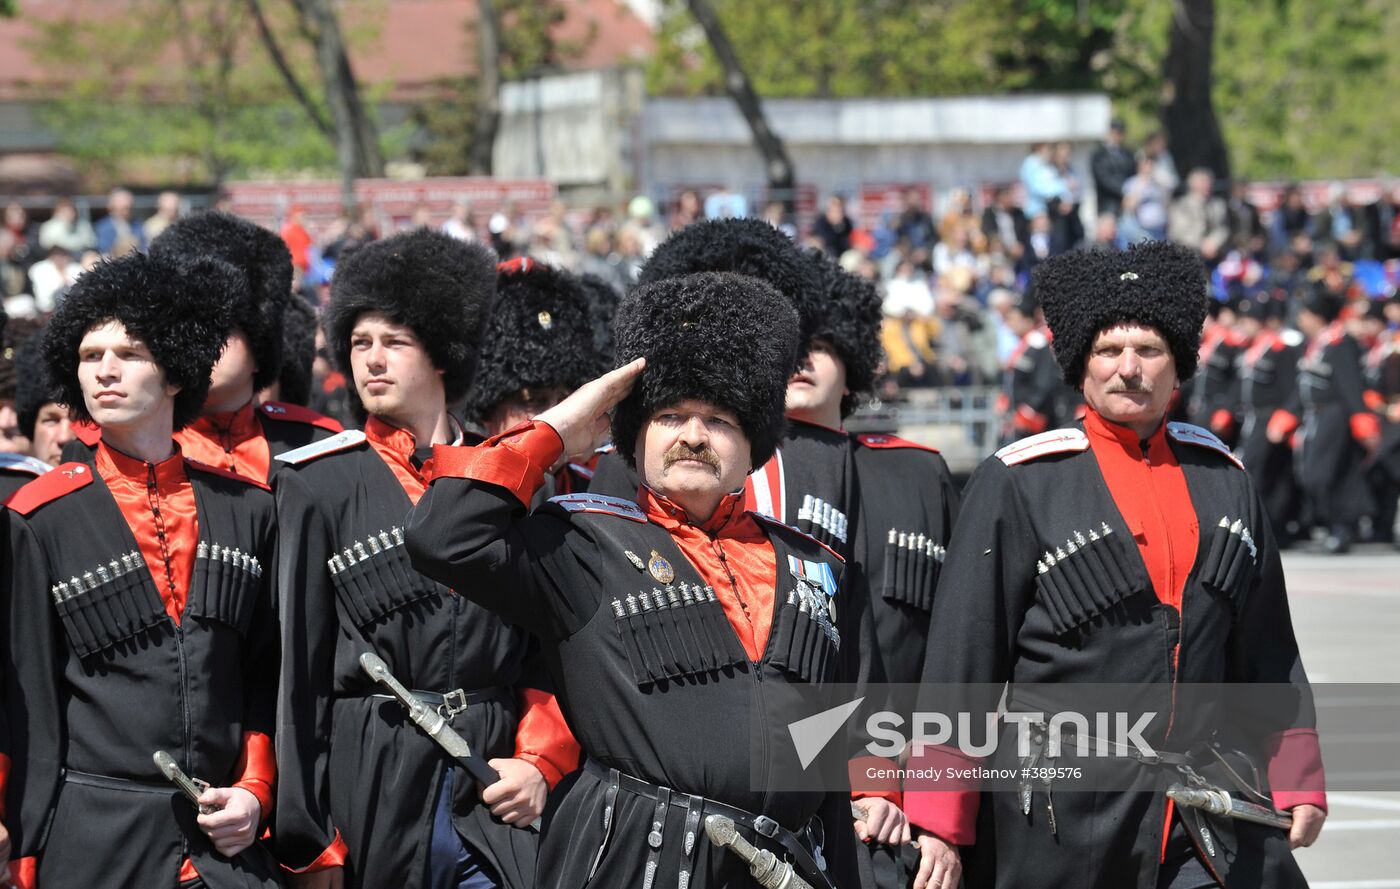 Cossack parade in Krasnodar